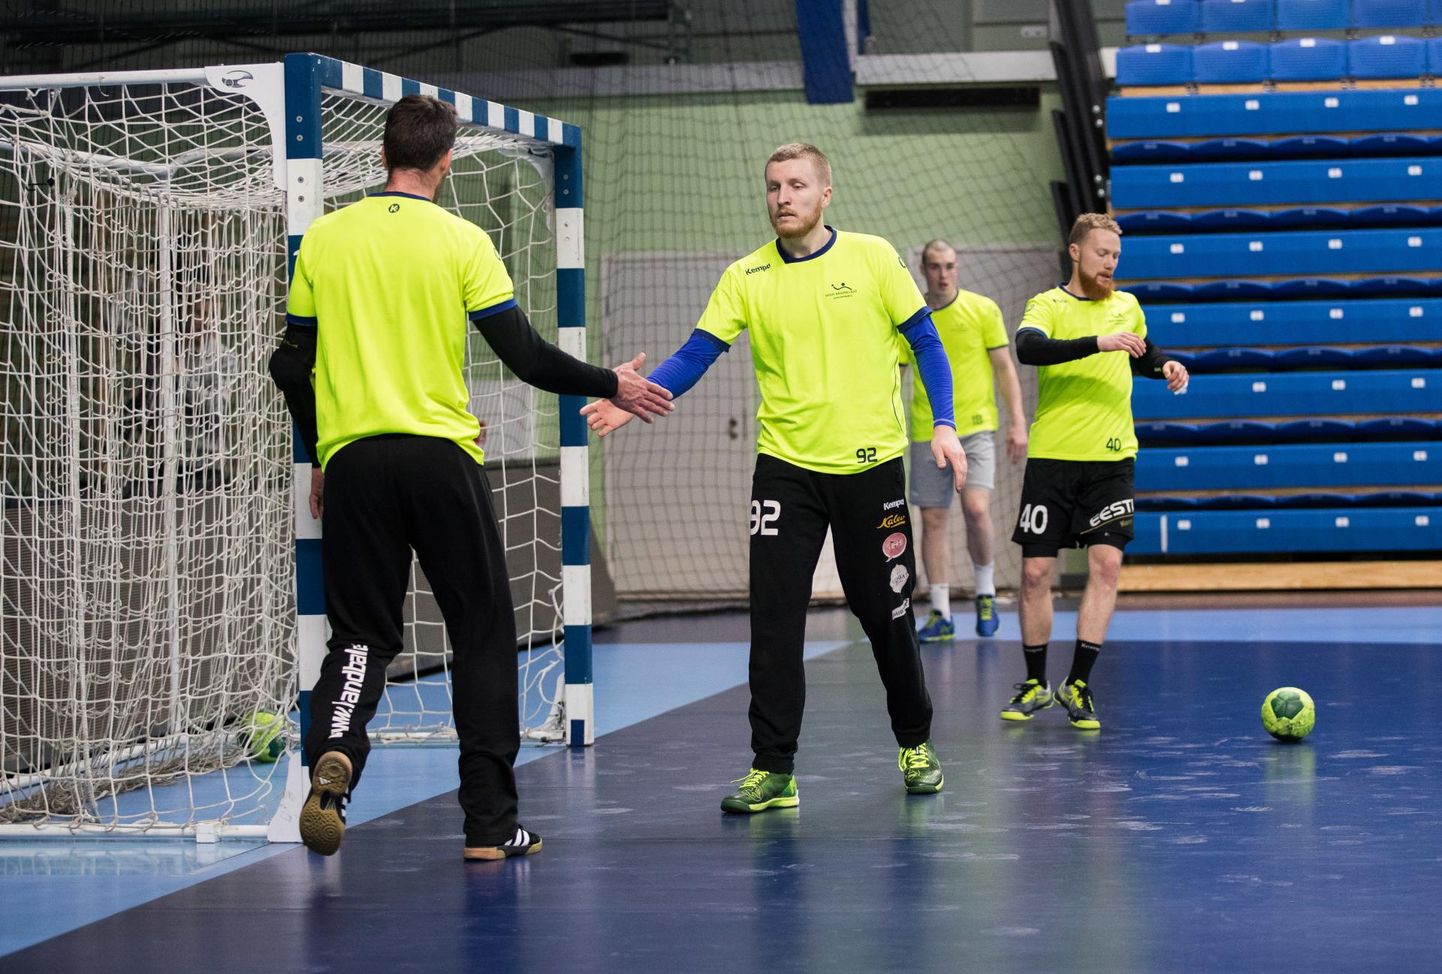 Eesti käsipallikoondis koguneb järgmisel nädalal, et valmistuda EM-i valikmängudeks Luksemburgi vastu. Eesti väravat valvab Viljandist pärit Rasmus Ots.